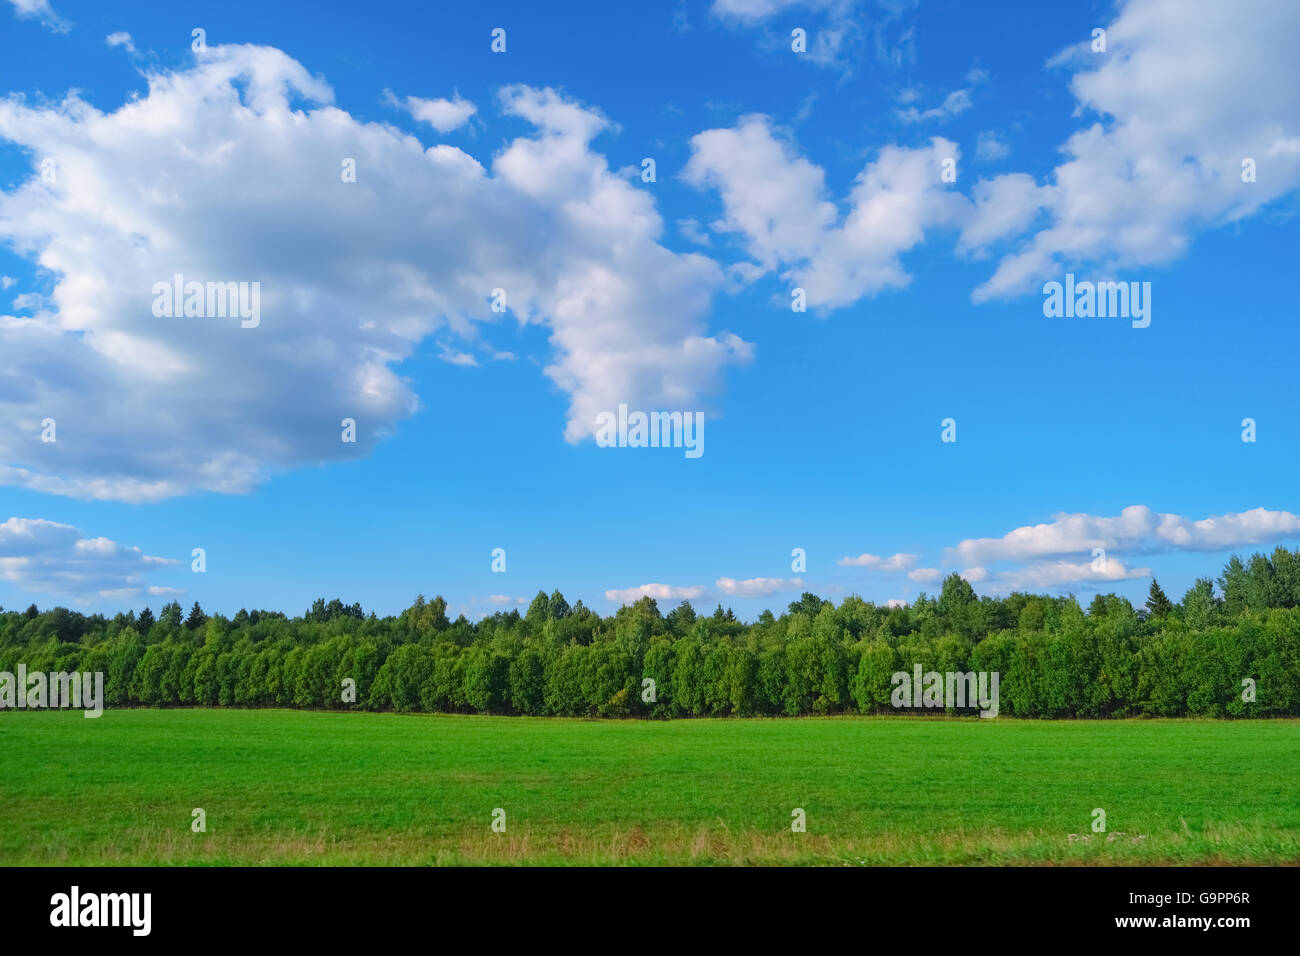 Hermoso paisaje de verano con el cielo azul, nubes, árboles y hierba Foto de stock